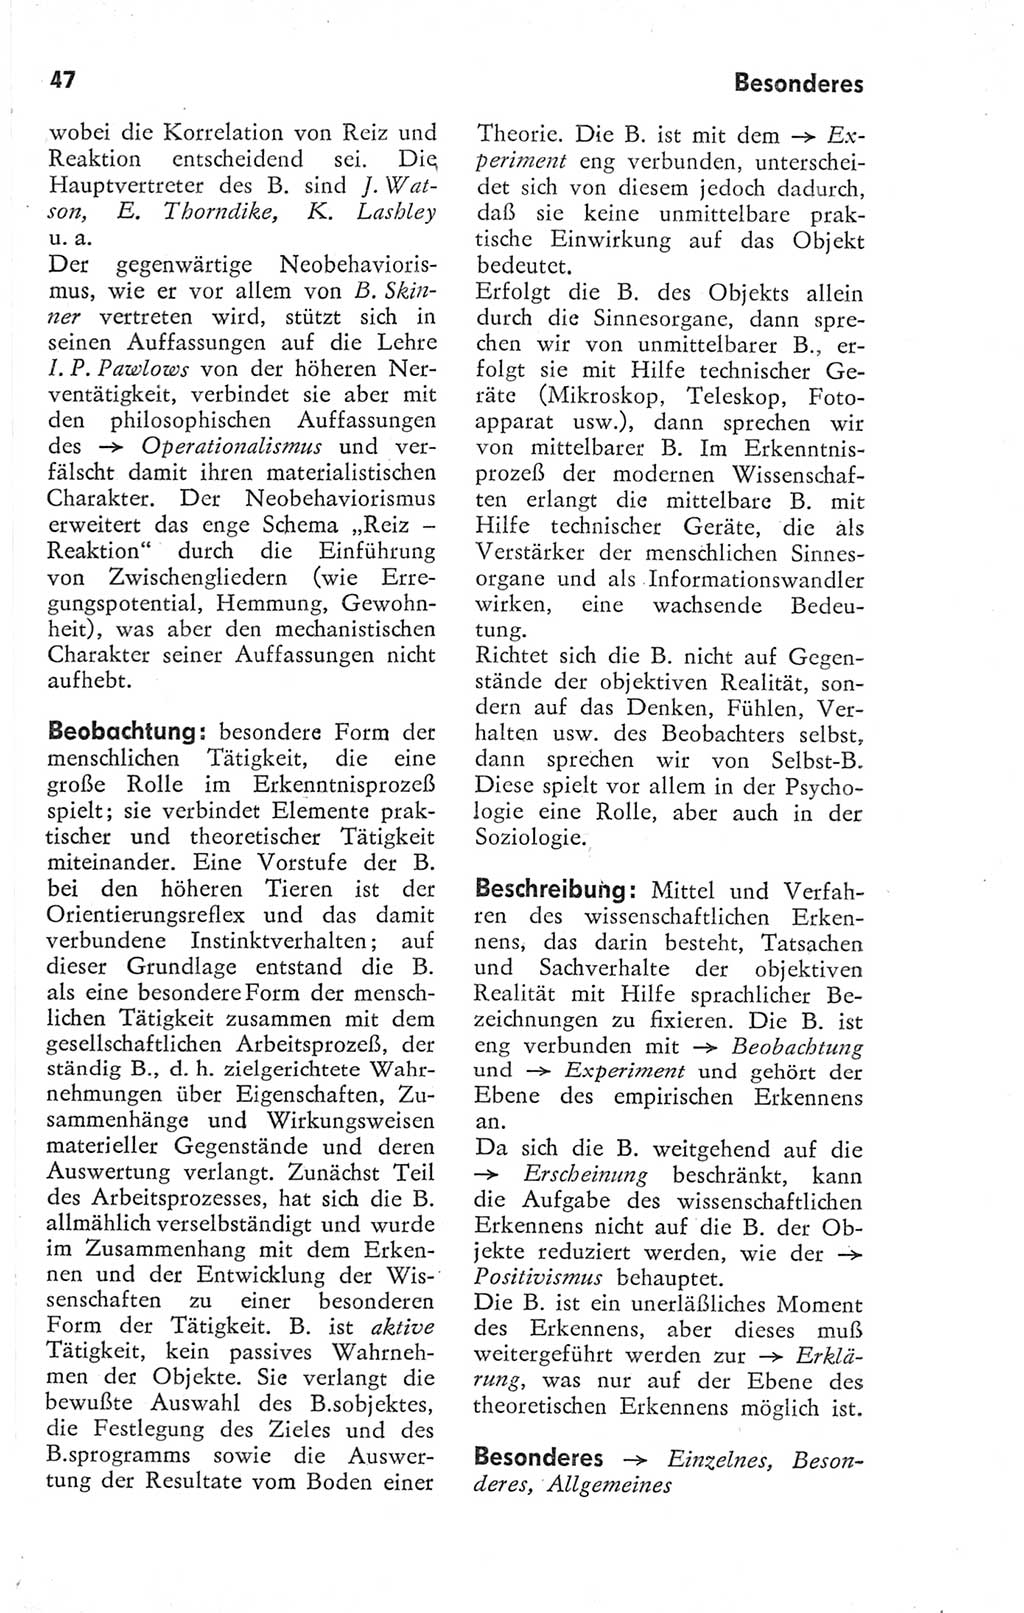 Kleines Wörterbuch der marxistisch-leninistischen Philosophie [Deutsche Demokratische Republik (DDR)] 1974, Seite 47 (Kl. Wb. ML Phil. DDR 1974, S. 47)